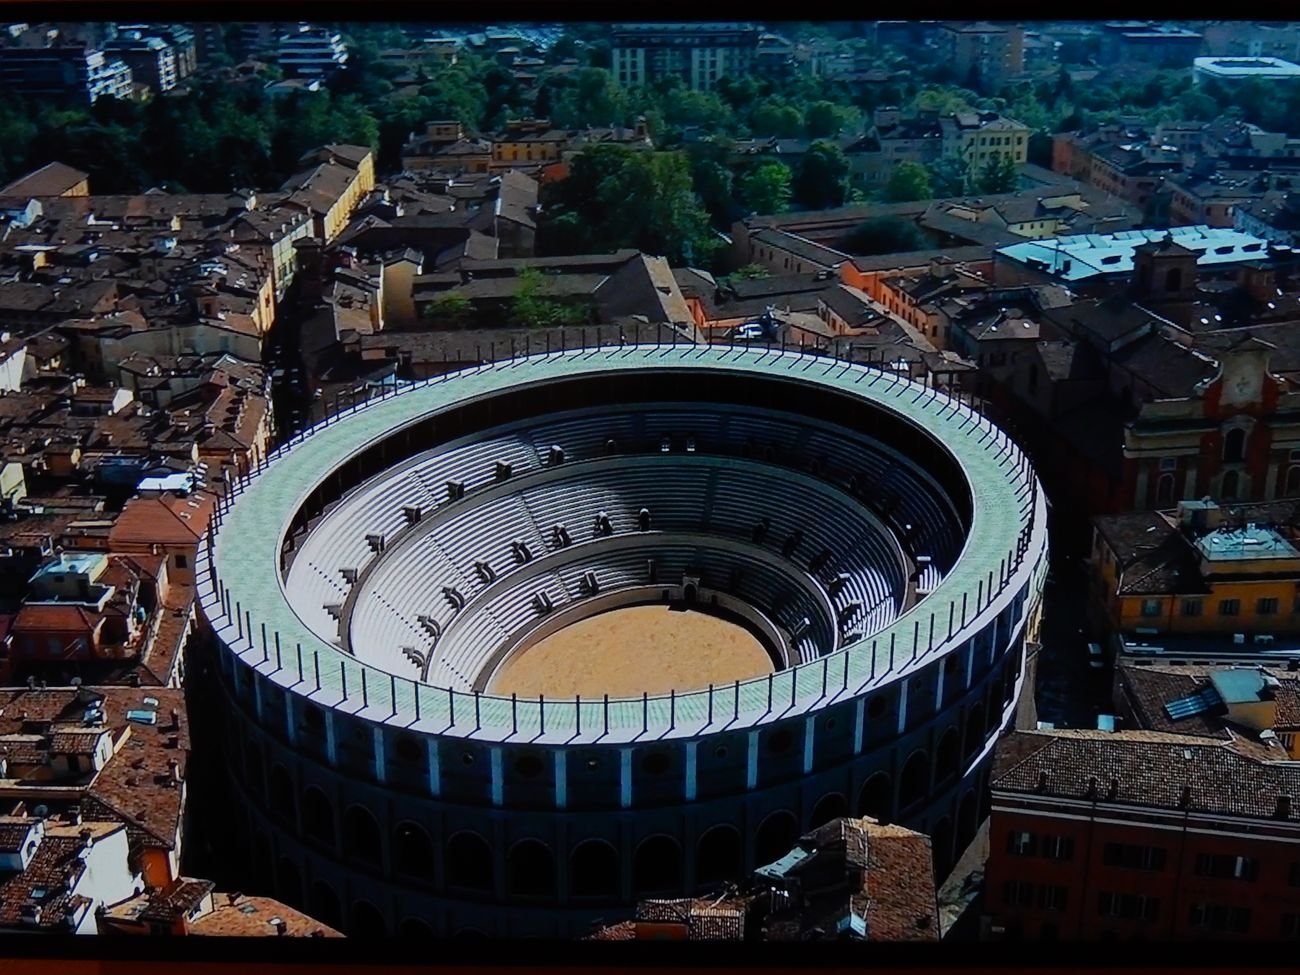 Ricostruzione virtuale di Mutina, l’anfiteatro romano ricostruito nella città contemporanea. A cura di Altair4 Multimedia